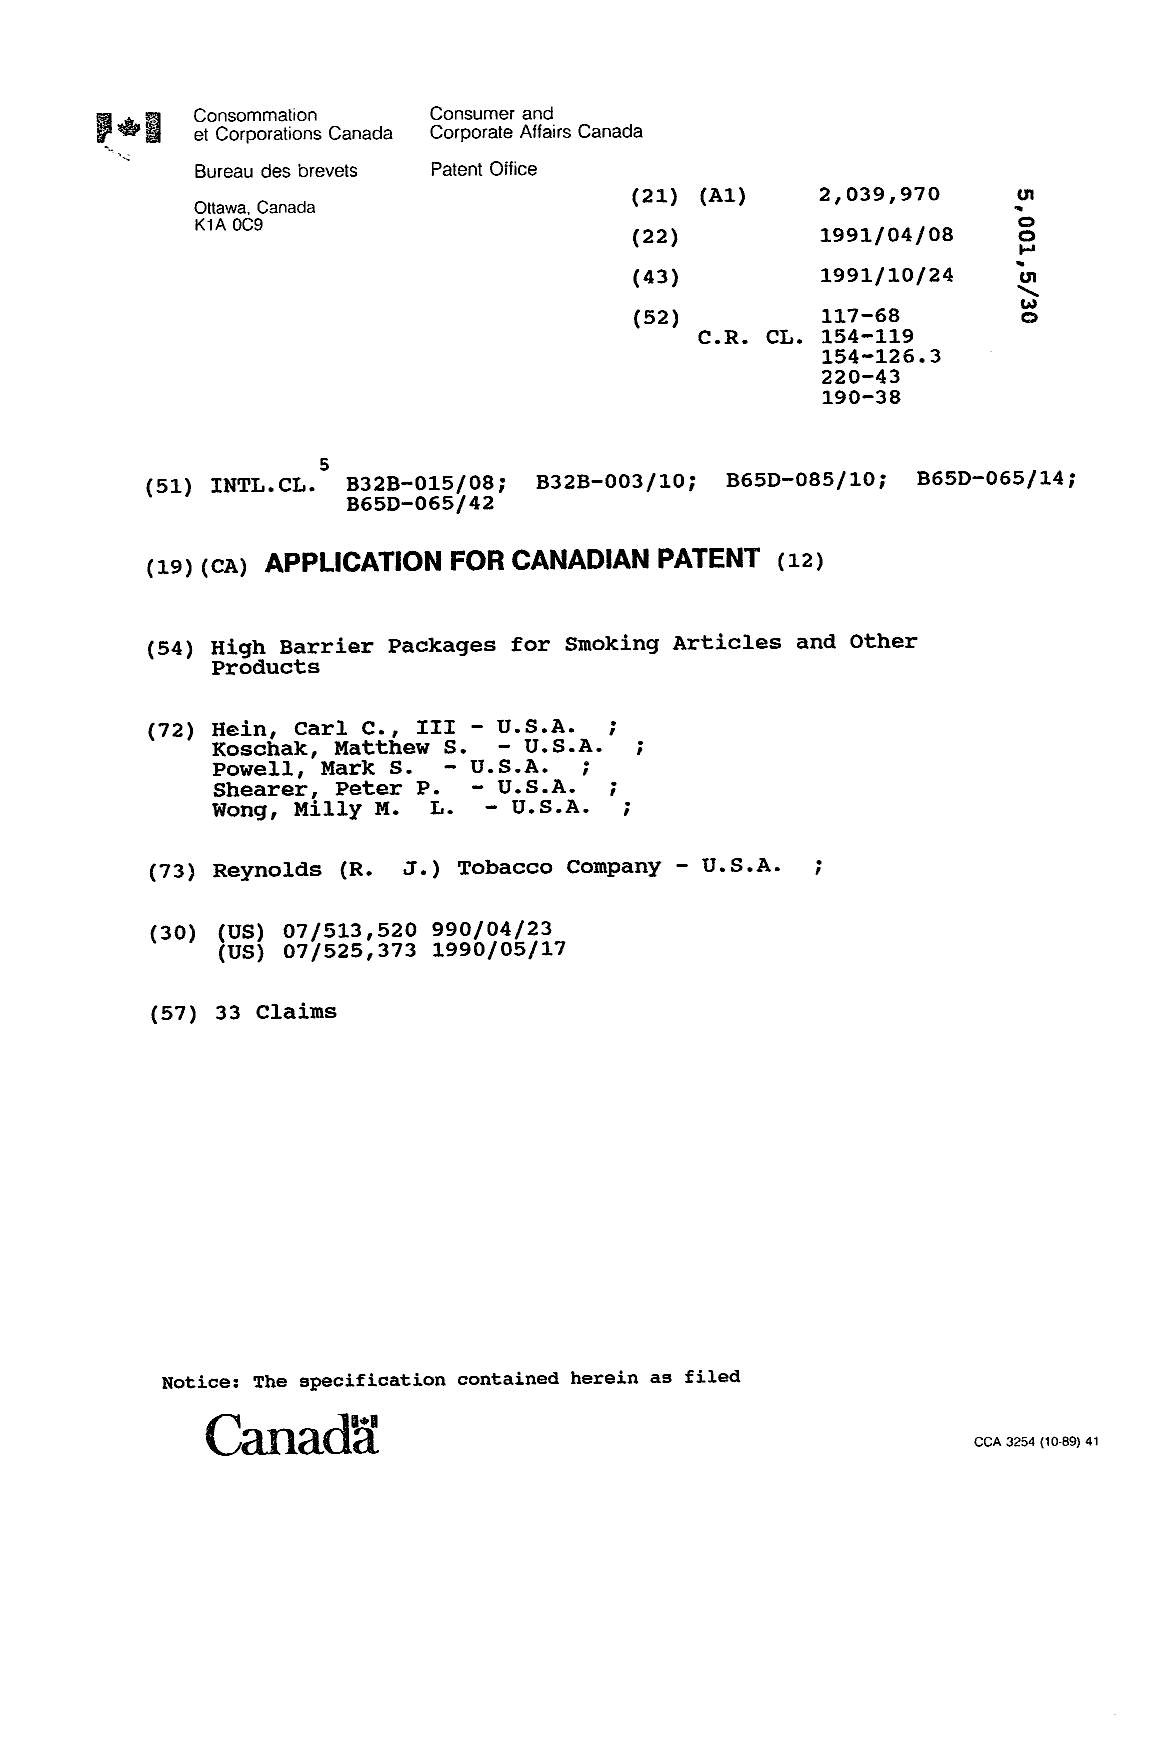 Document de brevet canadien 2039970. Page couverture 19940302. Image 1 de 1